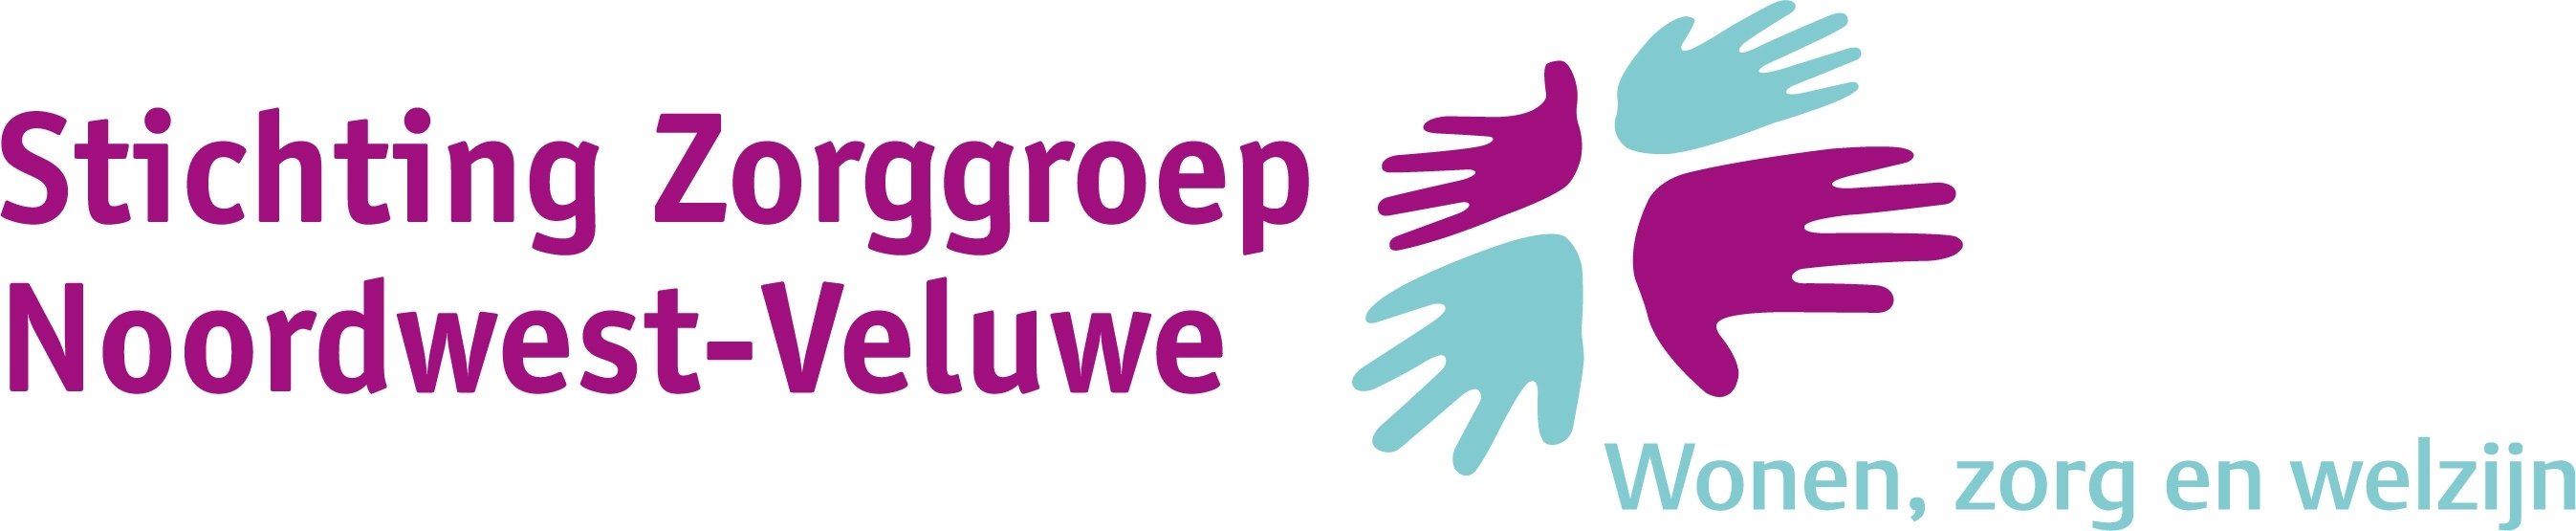 Stichting Zorggroep Noordwest-Veluwe